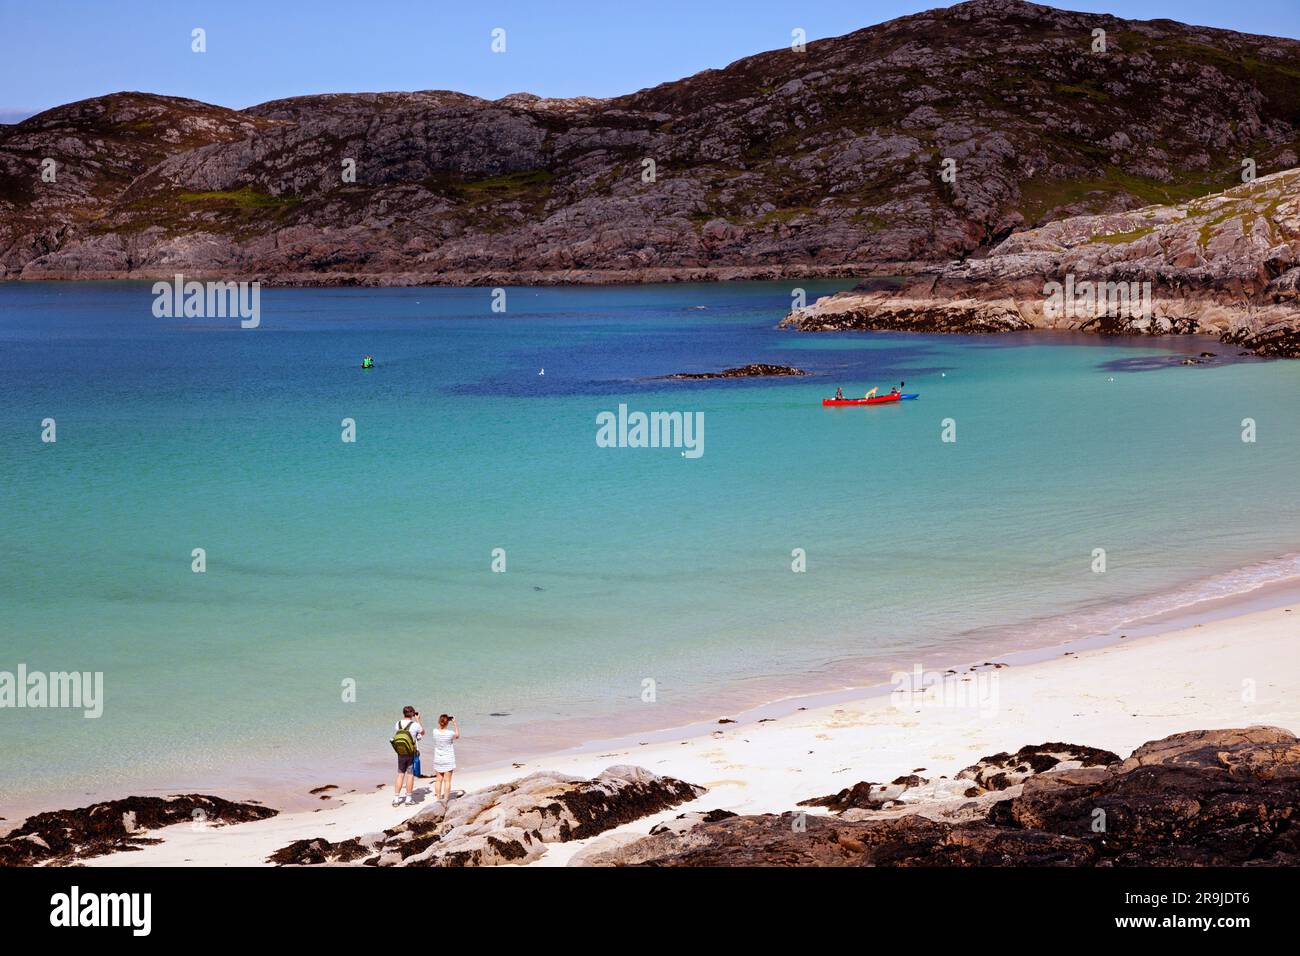 Strand in Achmelvich in Assynt, Sutherland, Nordwest Schottland, Achmelvich Bay, Highlands. Schottland, Großbritannien Stockfoto